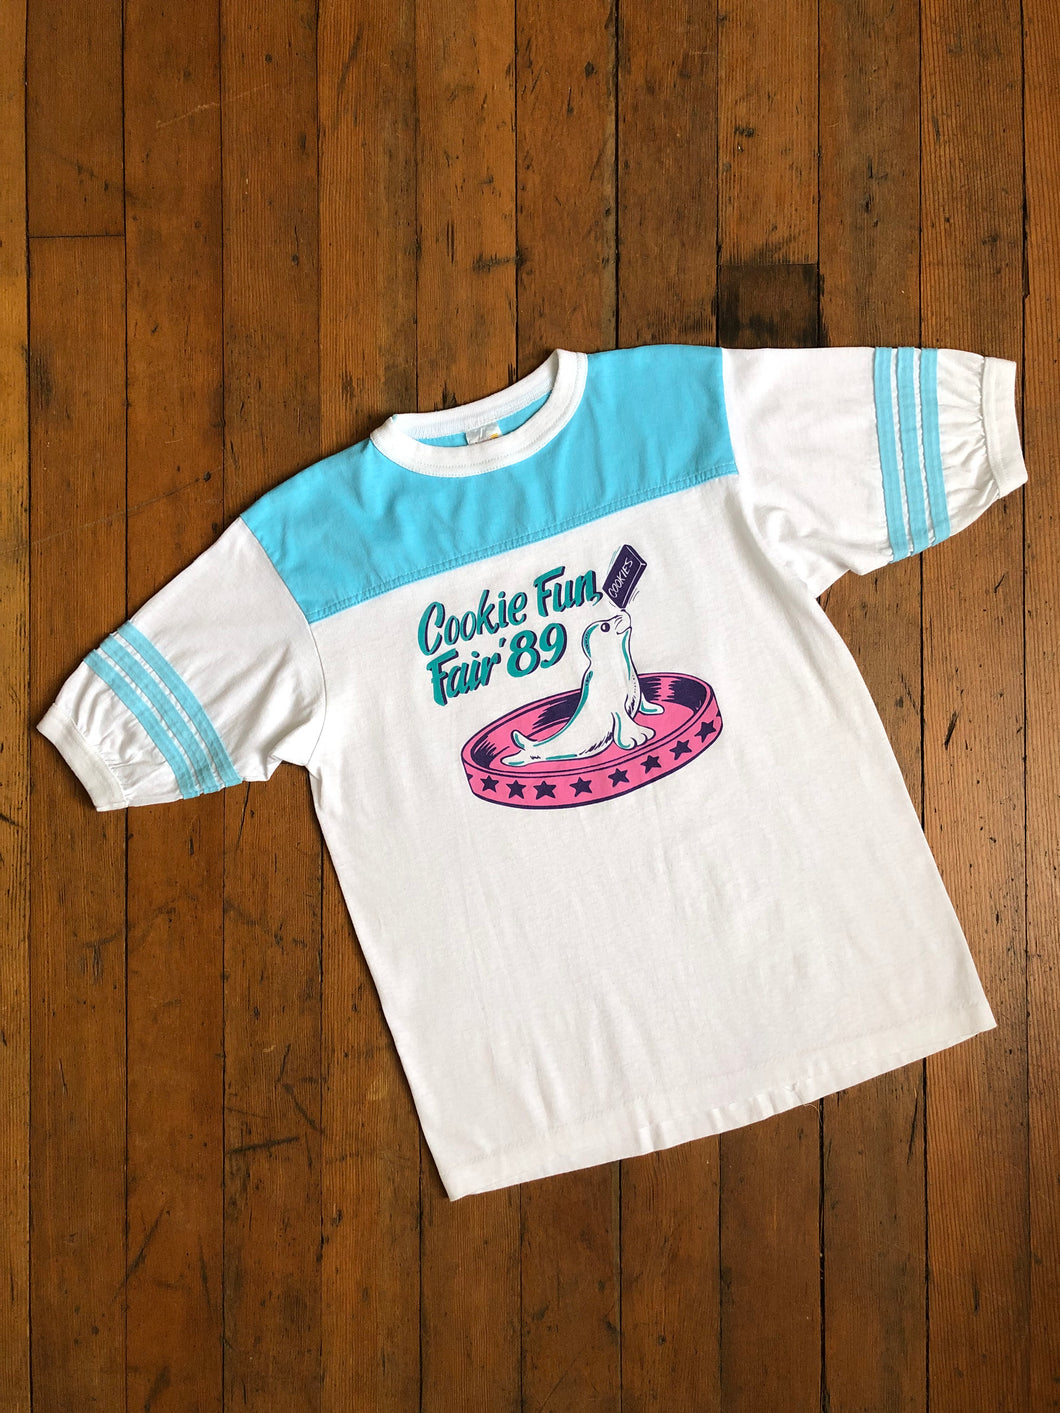 vintage 1989 Cookie Fun Fair shirt